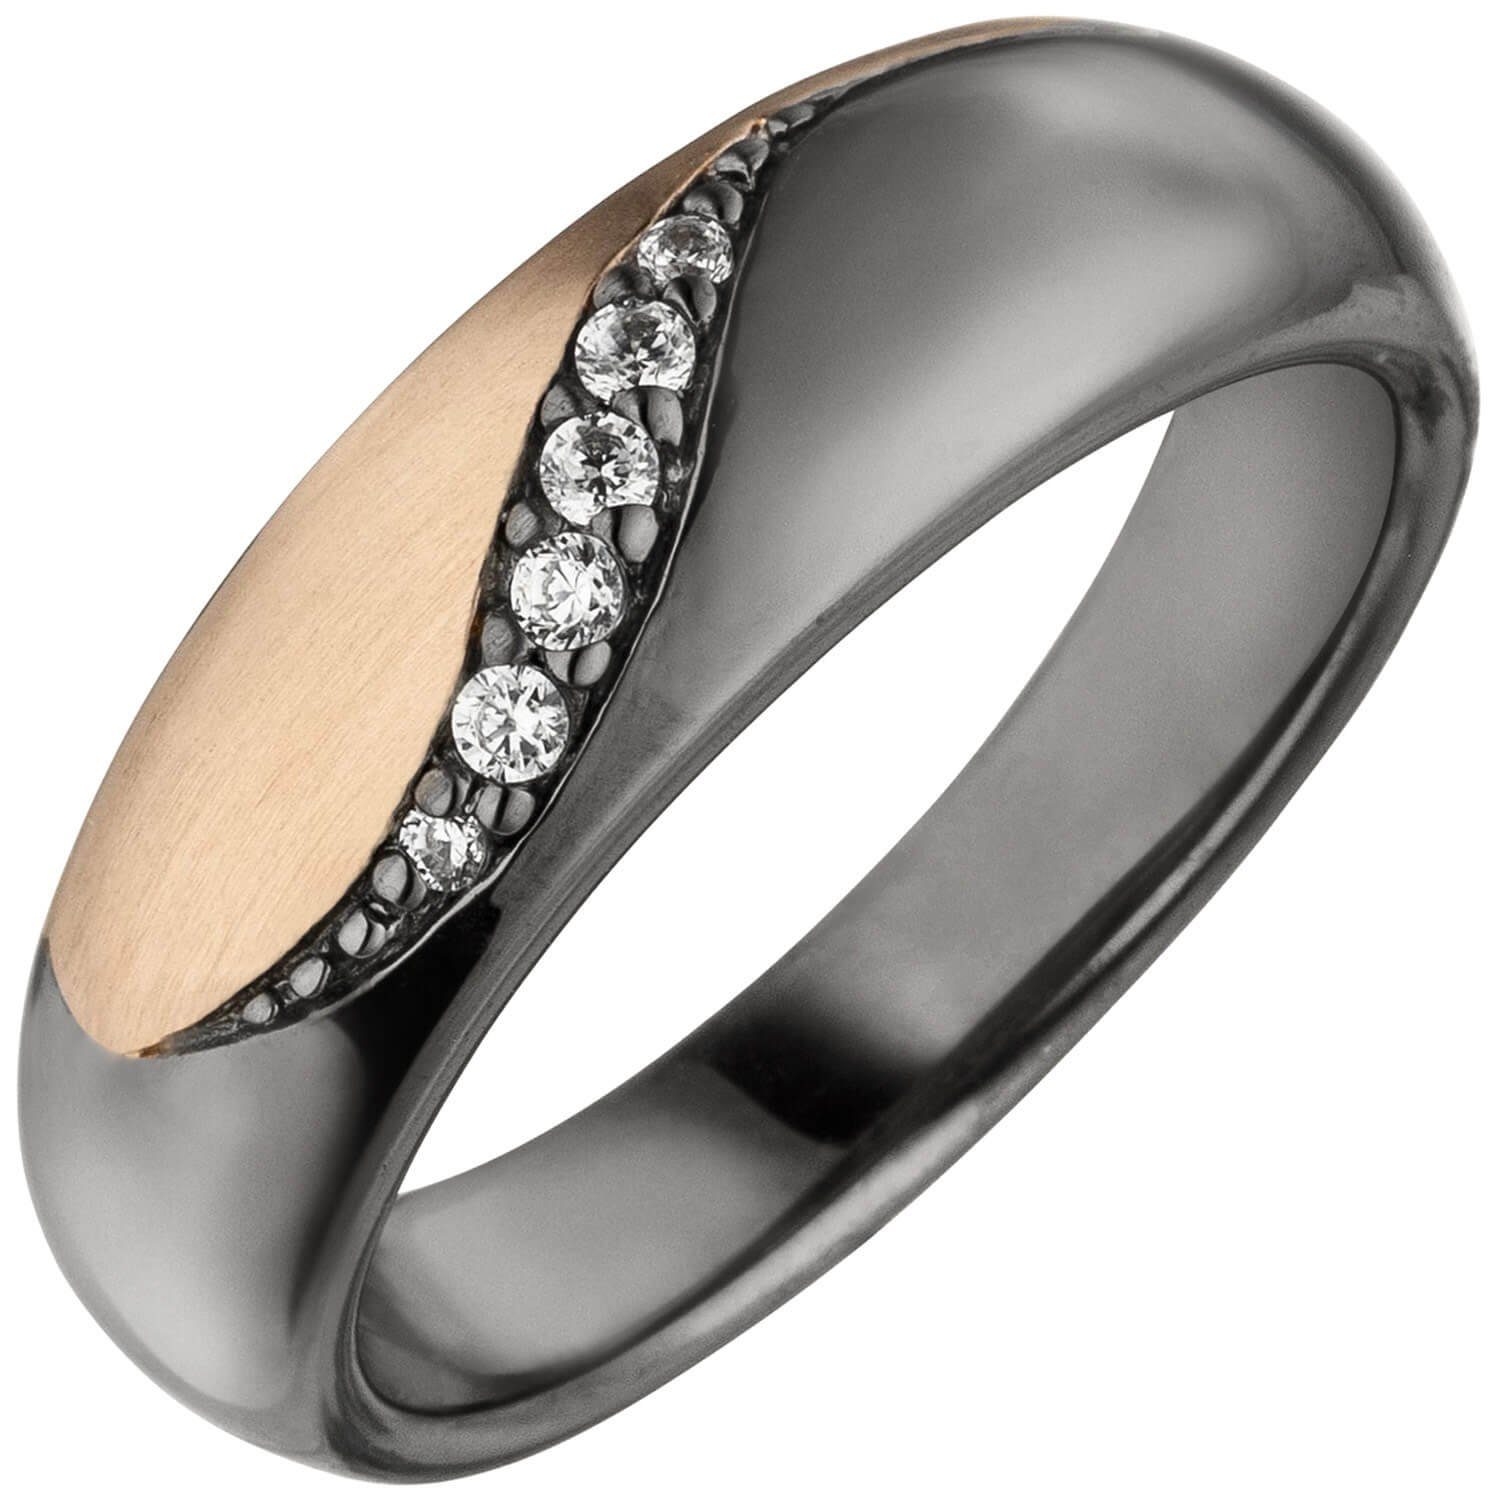 Schmuck Krone Silberring Damenring Ring mit 6 Zirkonia weiß, 925 Silber schwarz rhodiniert Fingerring, Silber 925